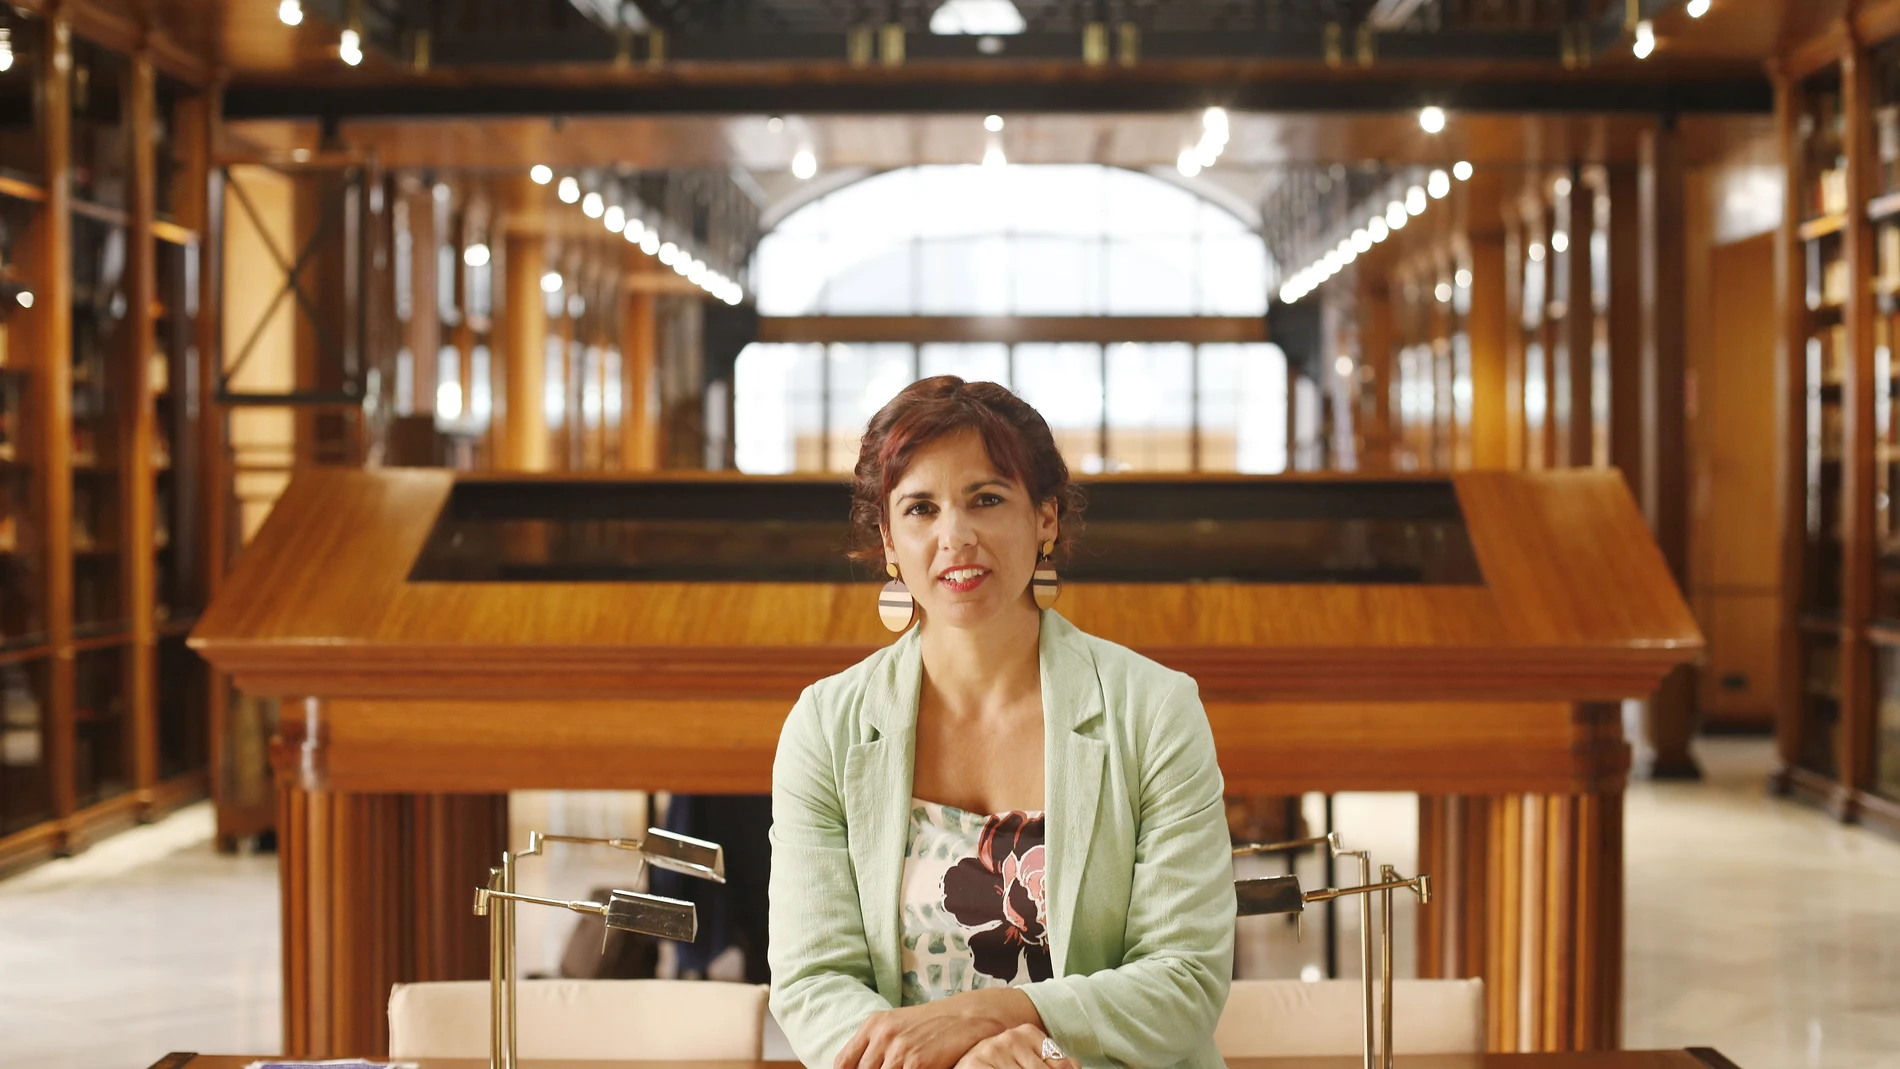 La líder de Adelante Andalucía y diputada no adscrita, Teresa Rodríguez, posa en la biblioteca del Parlamento andaluz